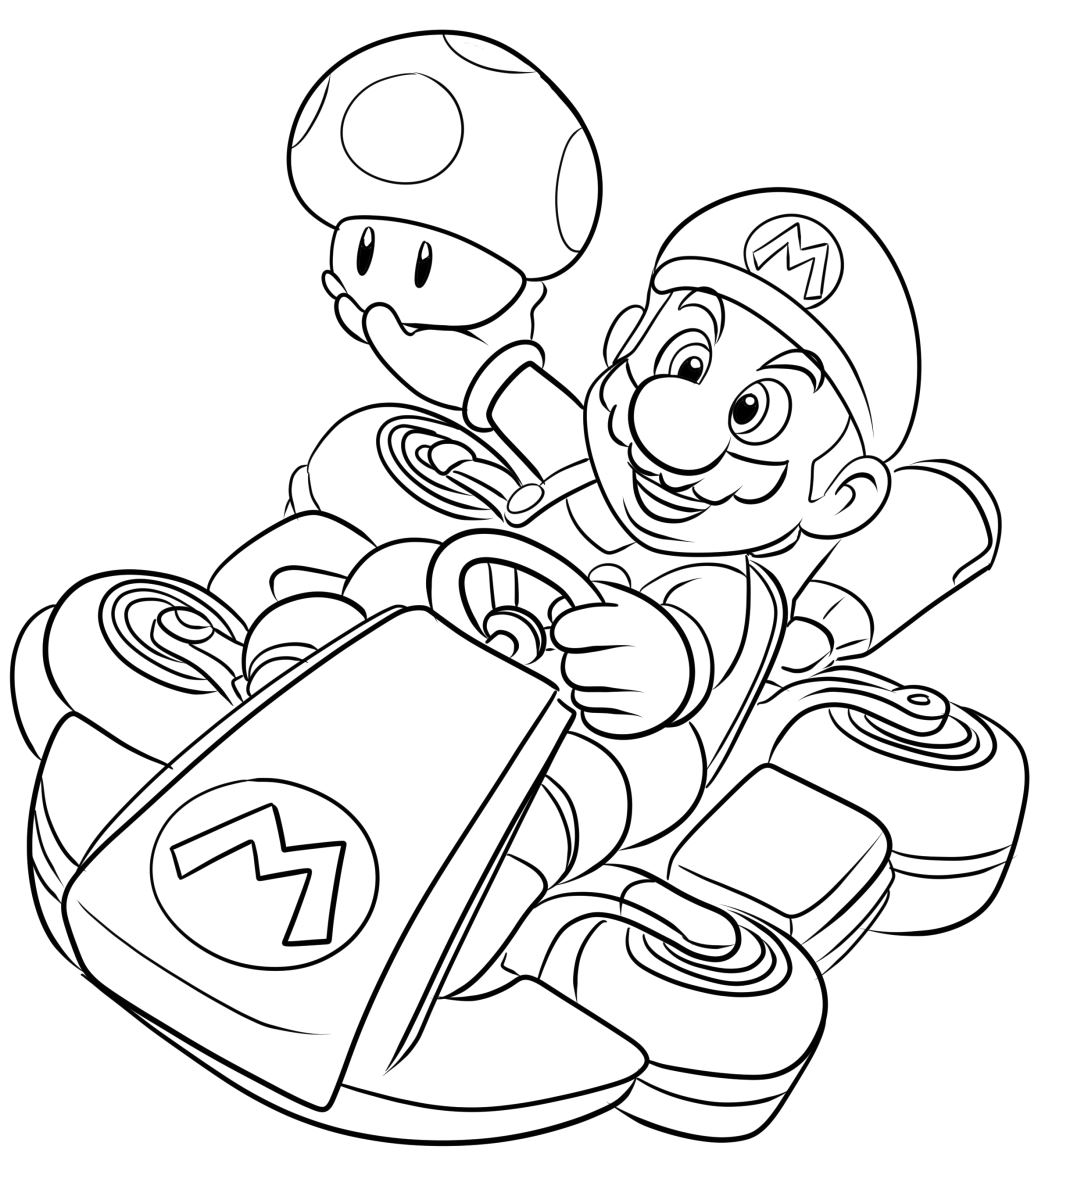 Disegno 04 di Mario Kart da stampare e colorare